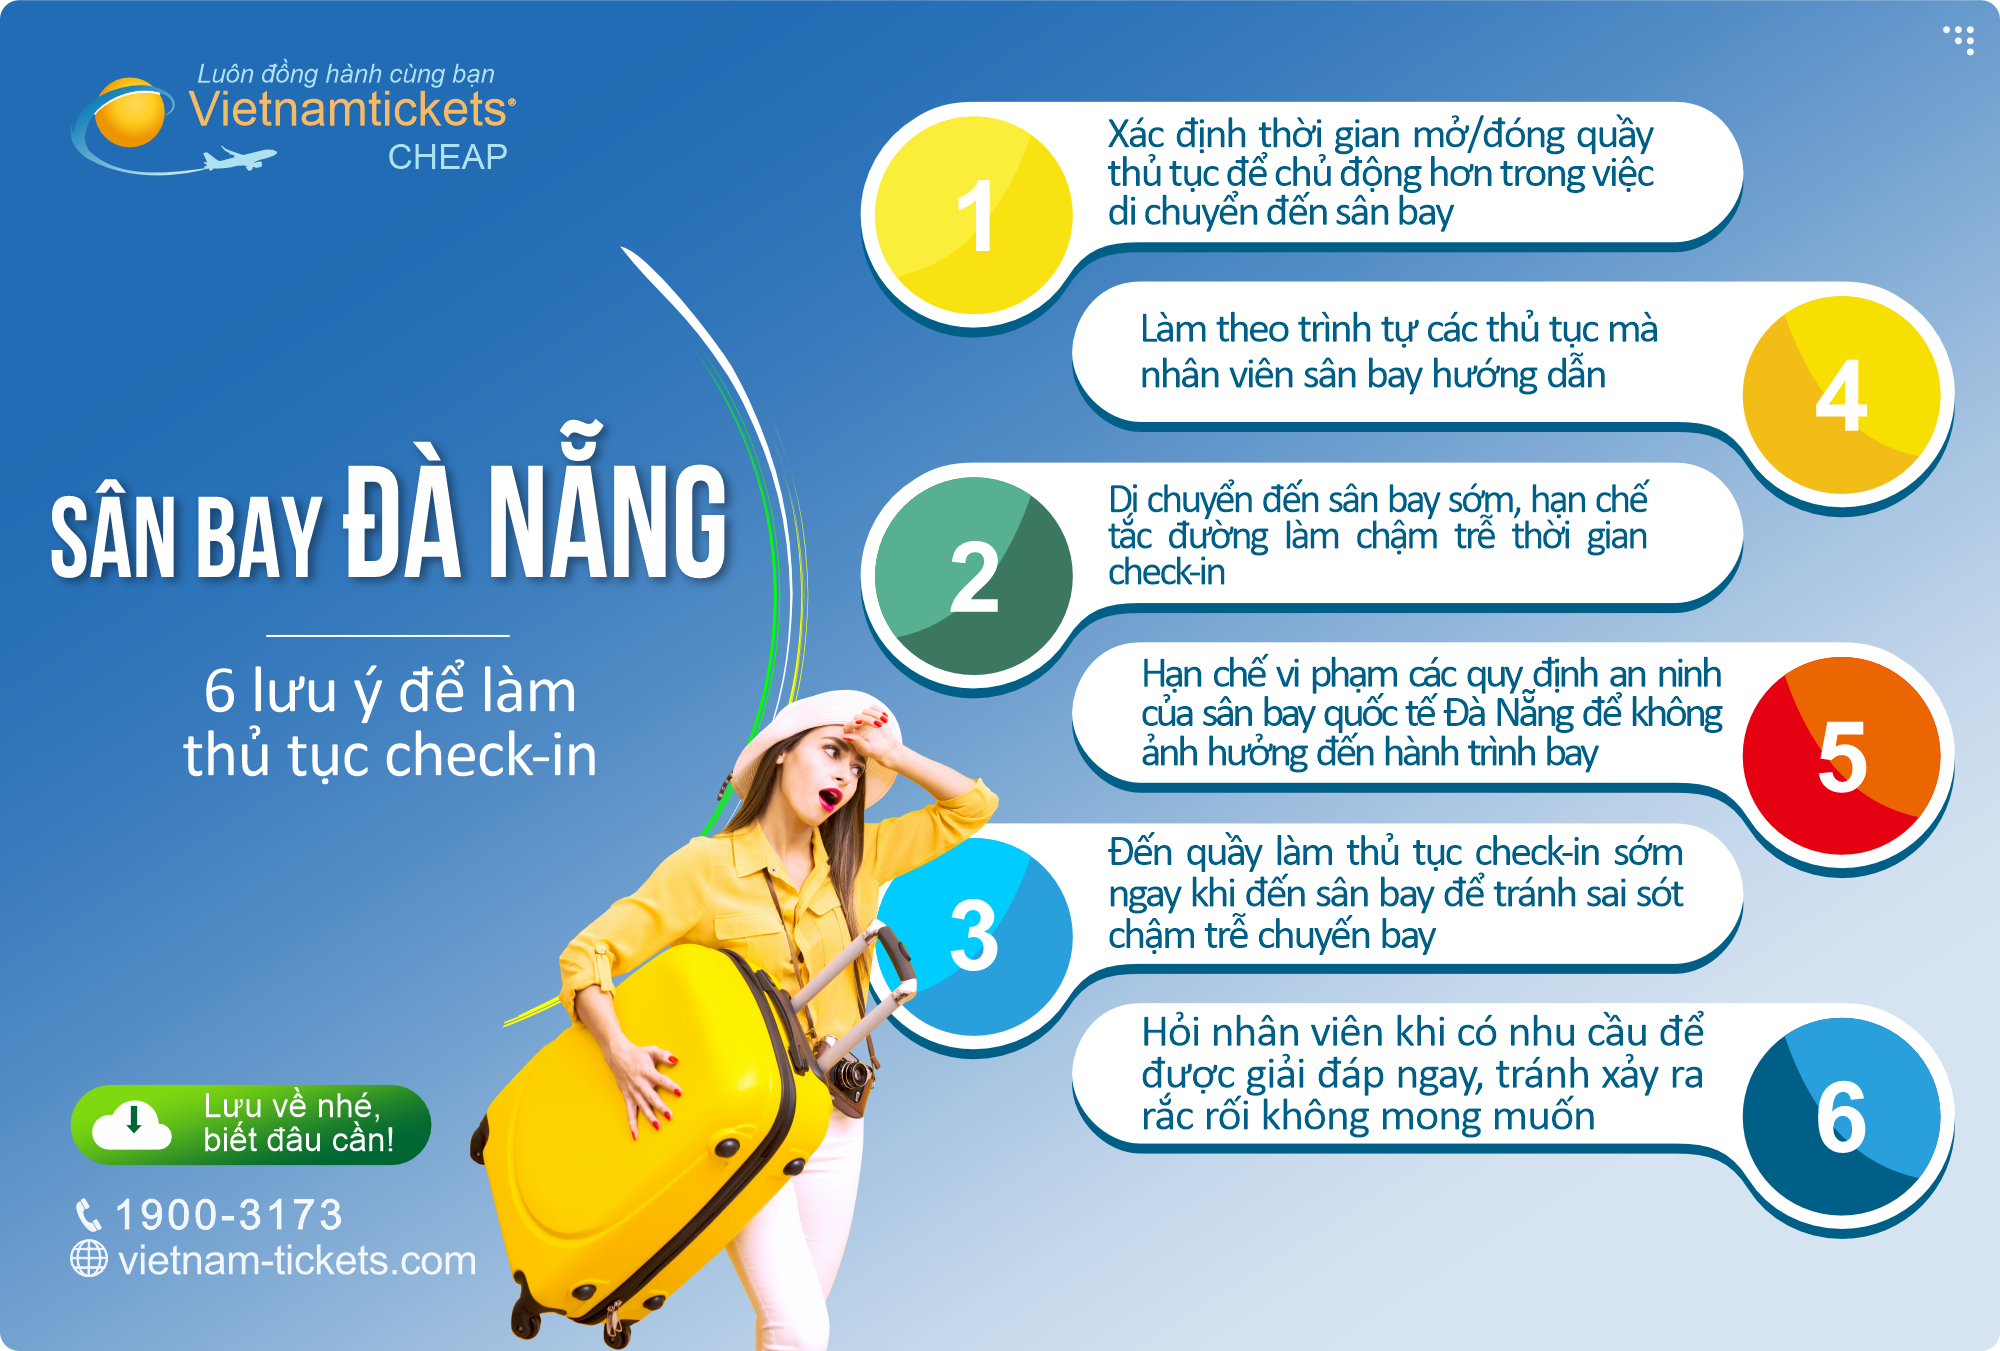 6 Lưu ý để làm thủ tục check-in tại sân bay Đà Nẵng